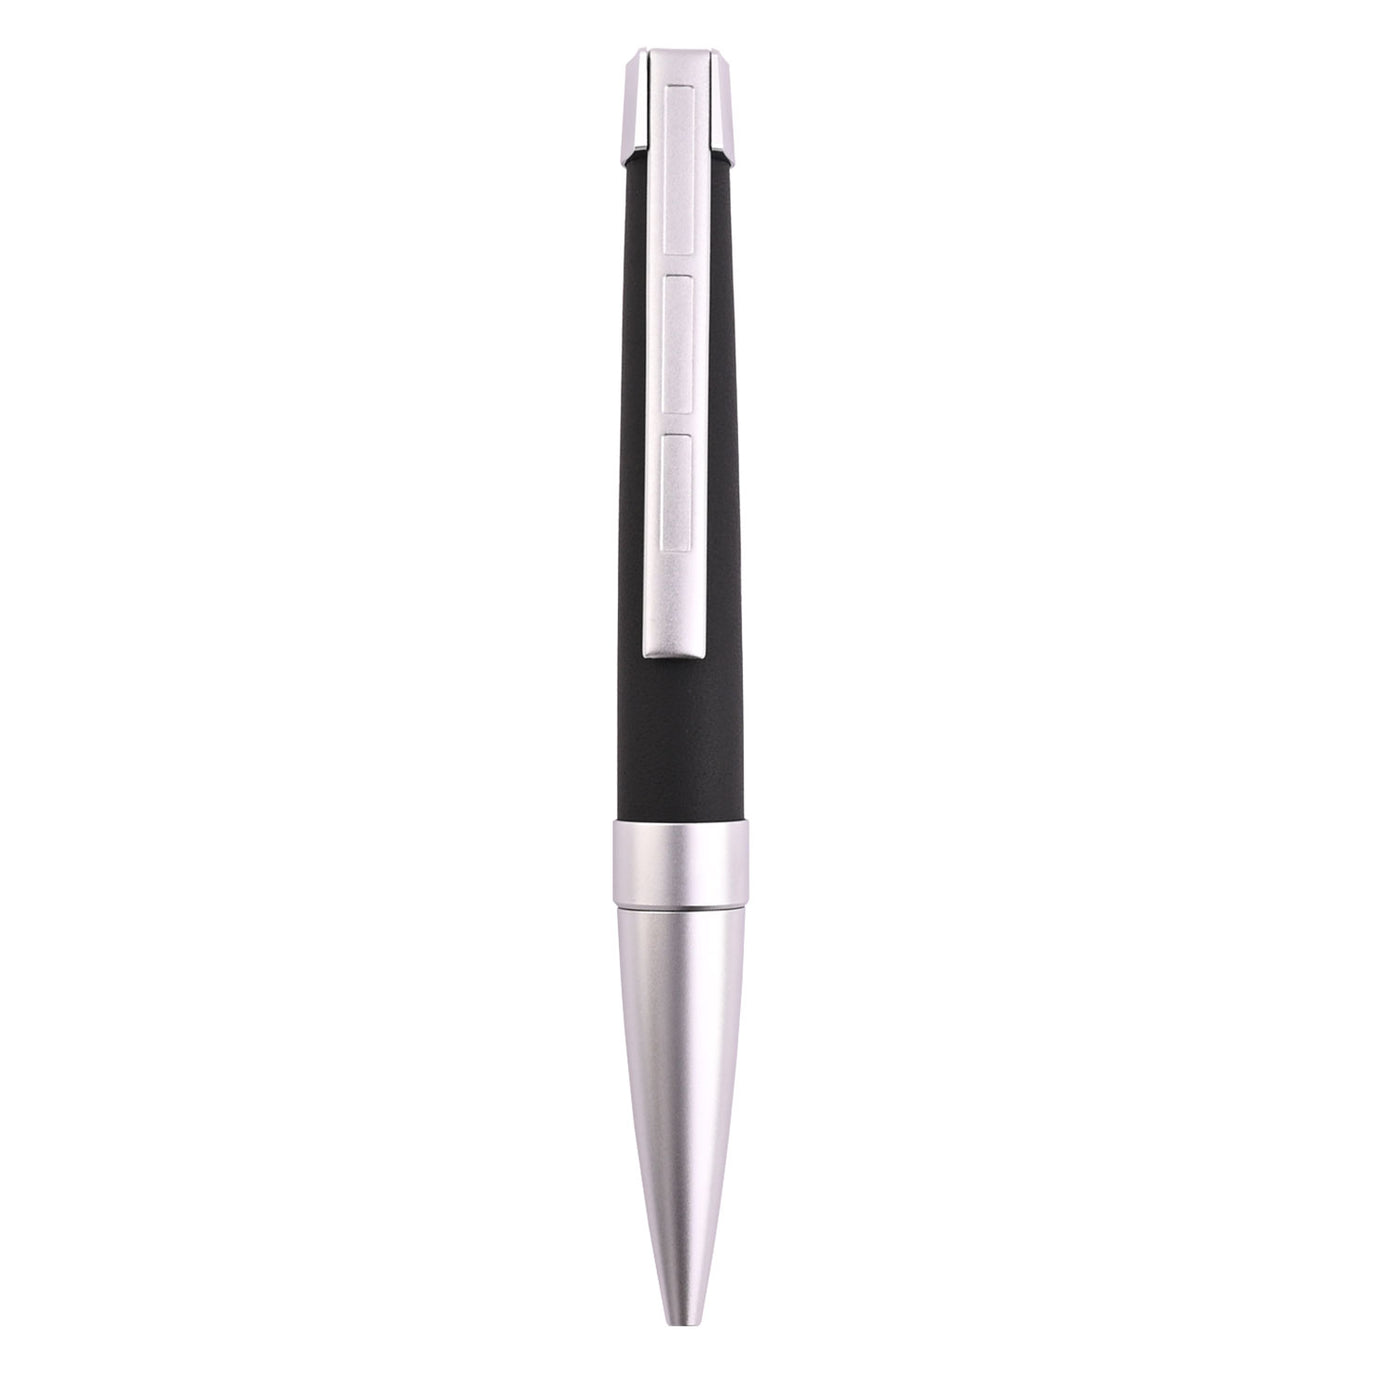 Staedtler Premium Corium Simplex Ball Pen - Anthracite Leather CT 6